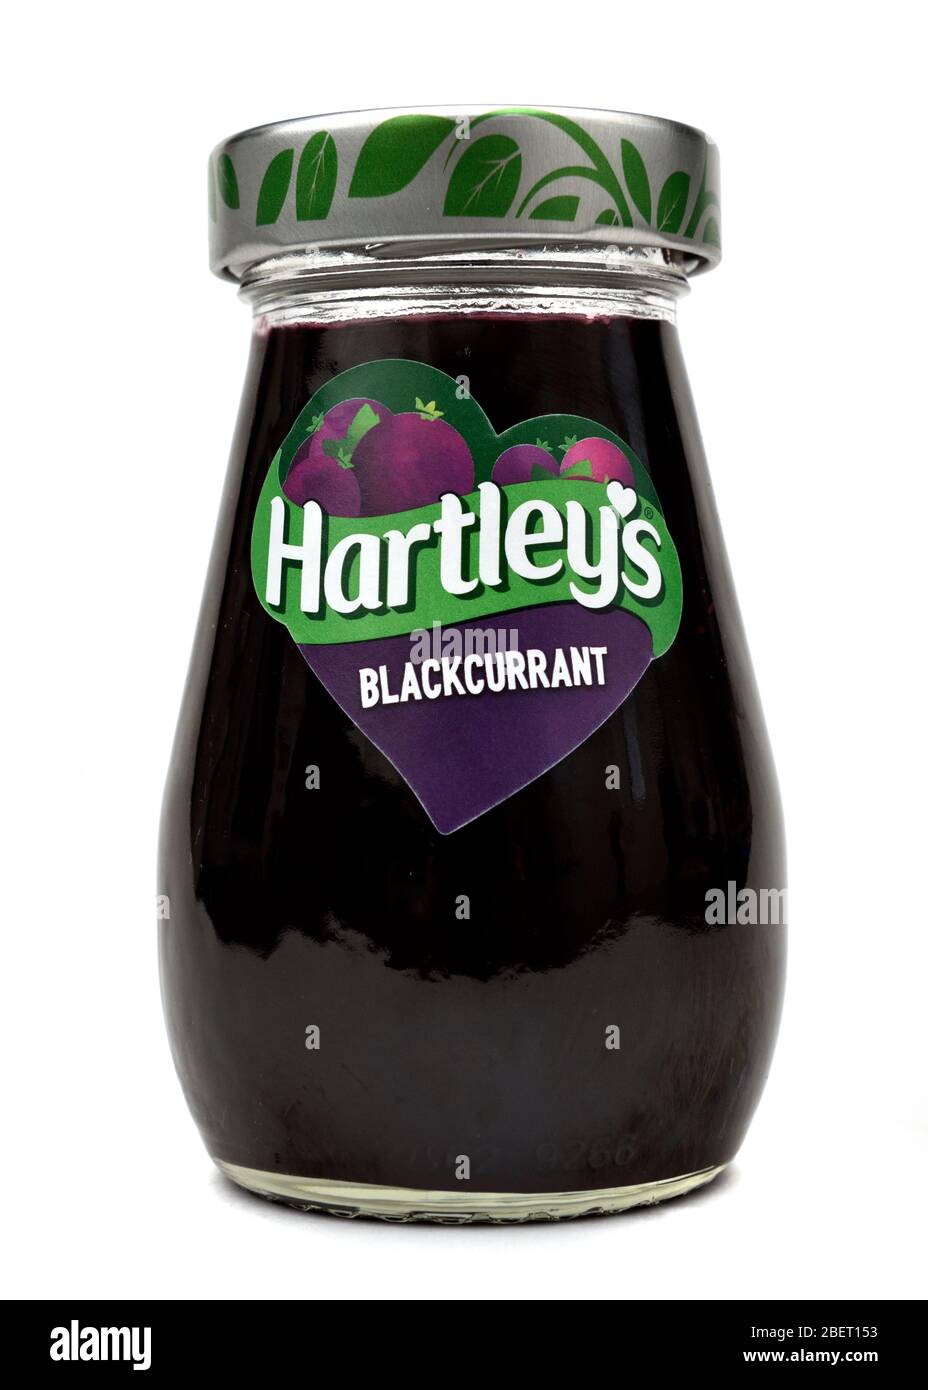 Un pot en verre de Harleys jam Blackcurrant sur un fond blanc Banque D'Images